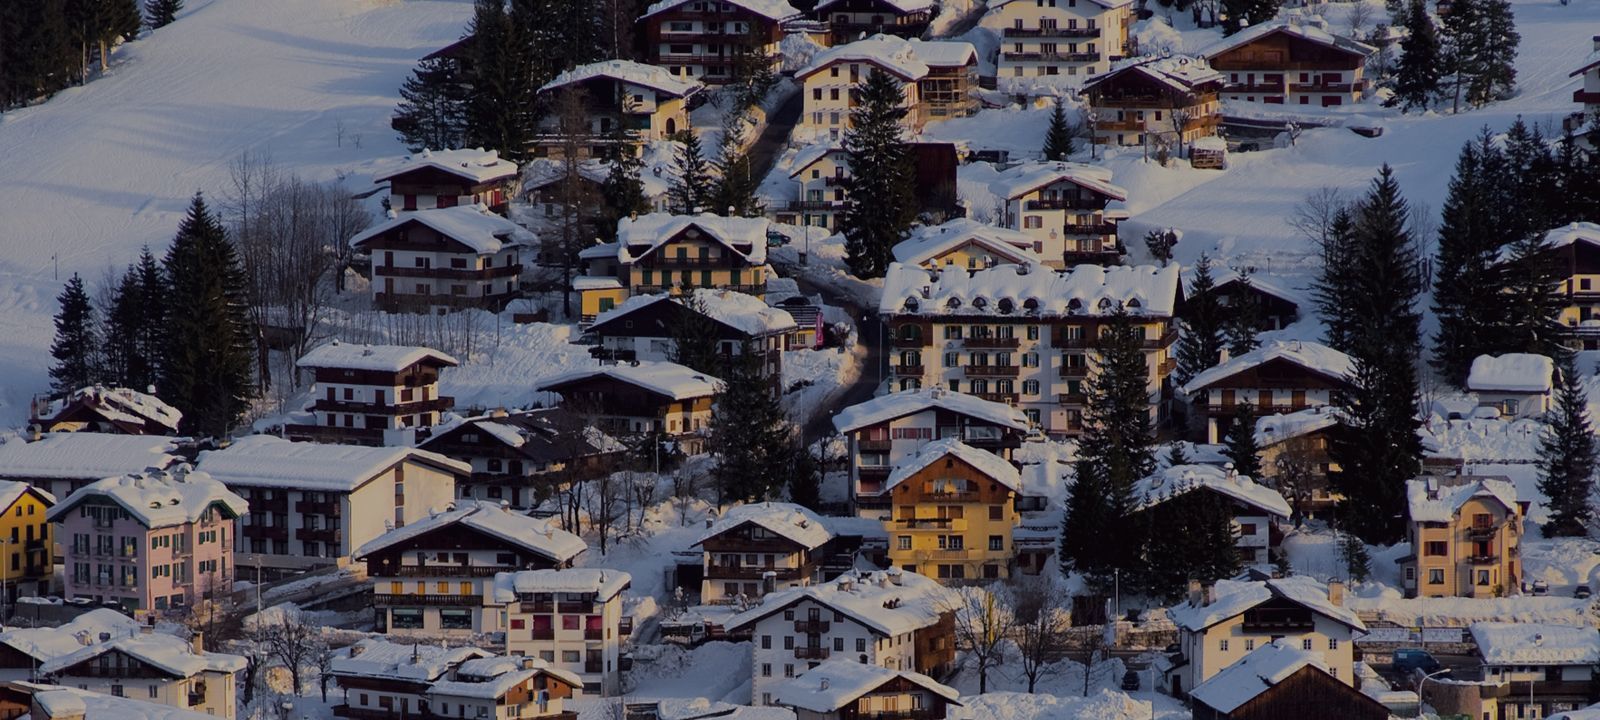 Luxury Ski Chalets Italy